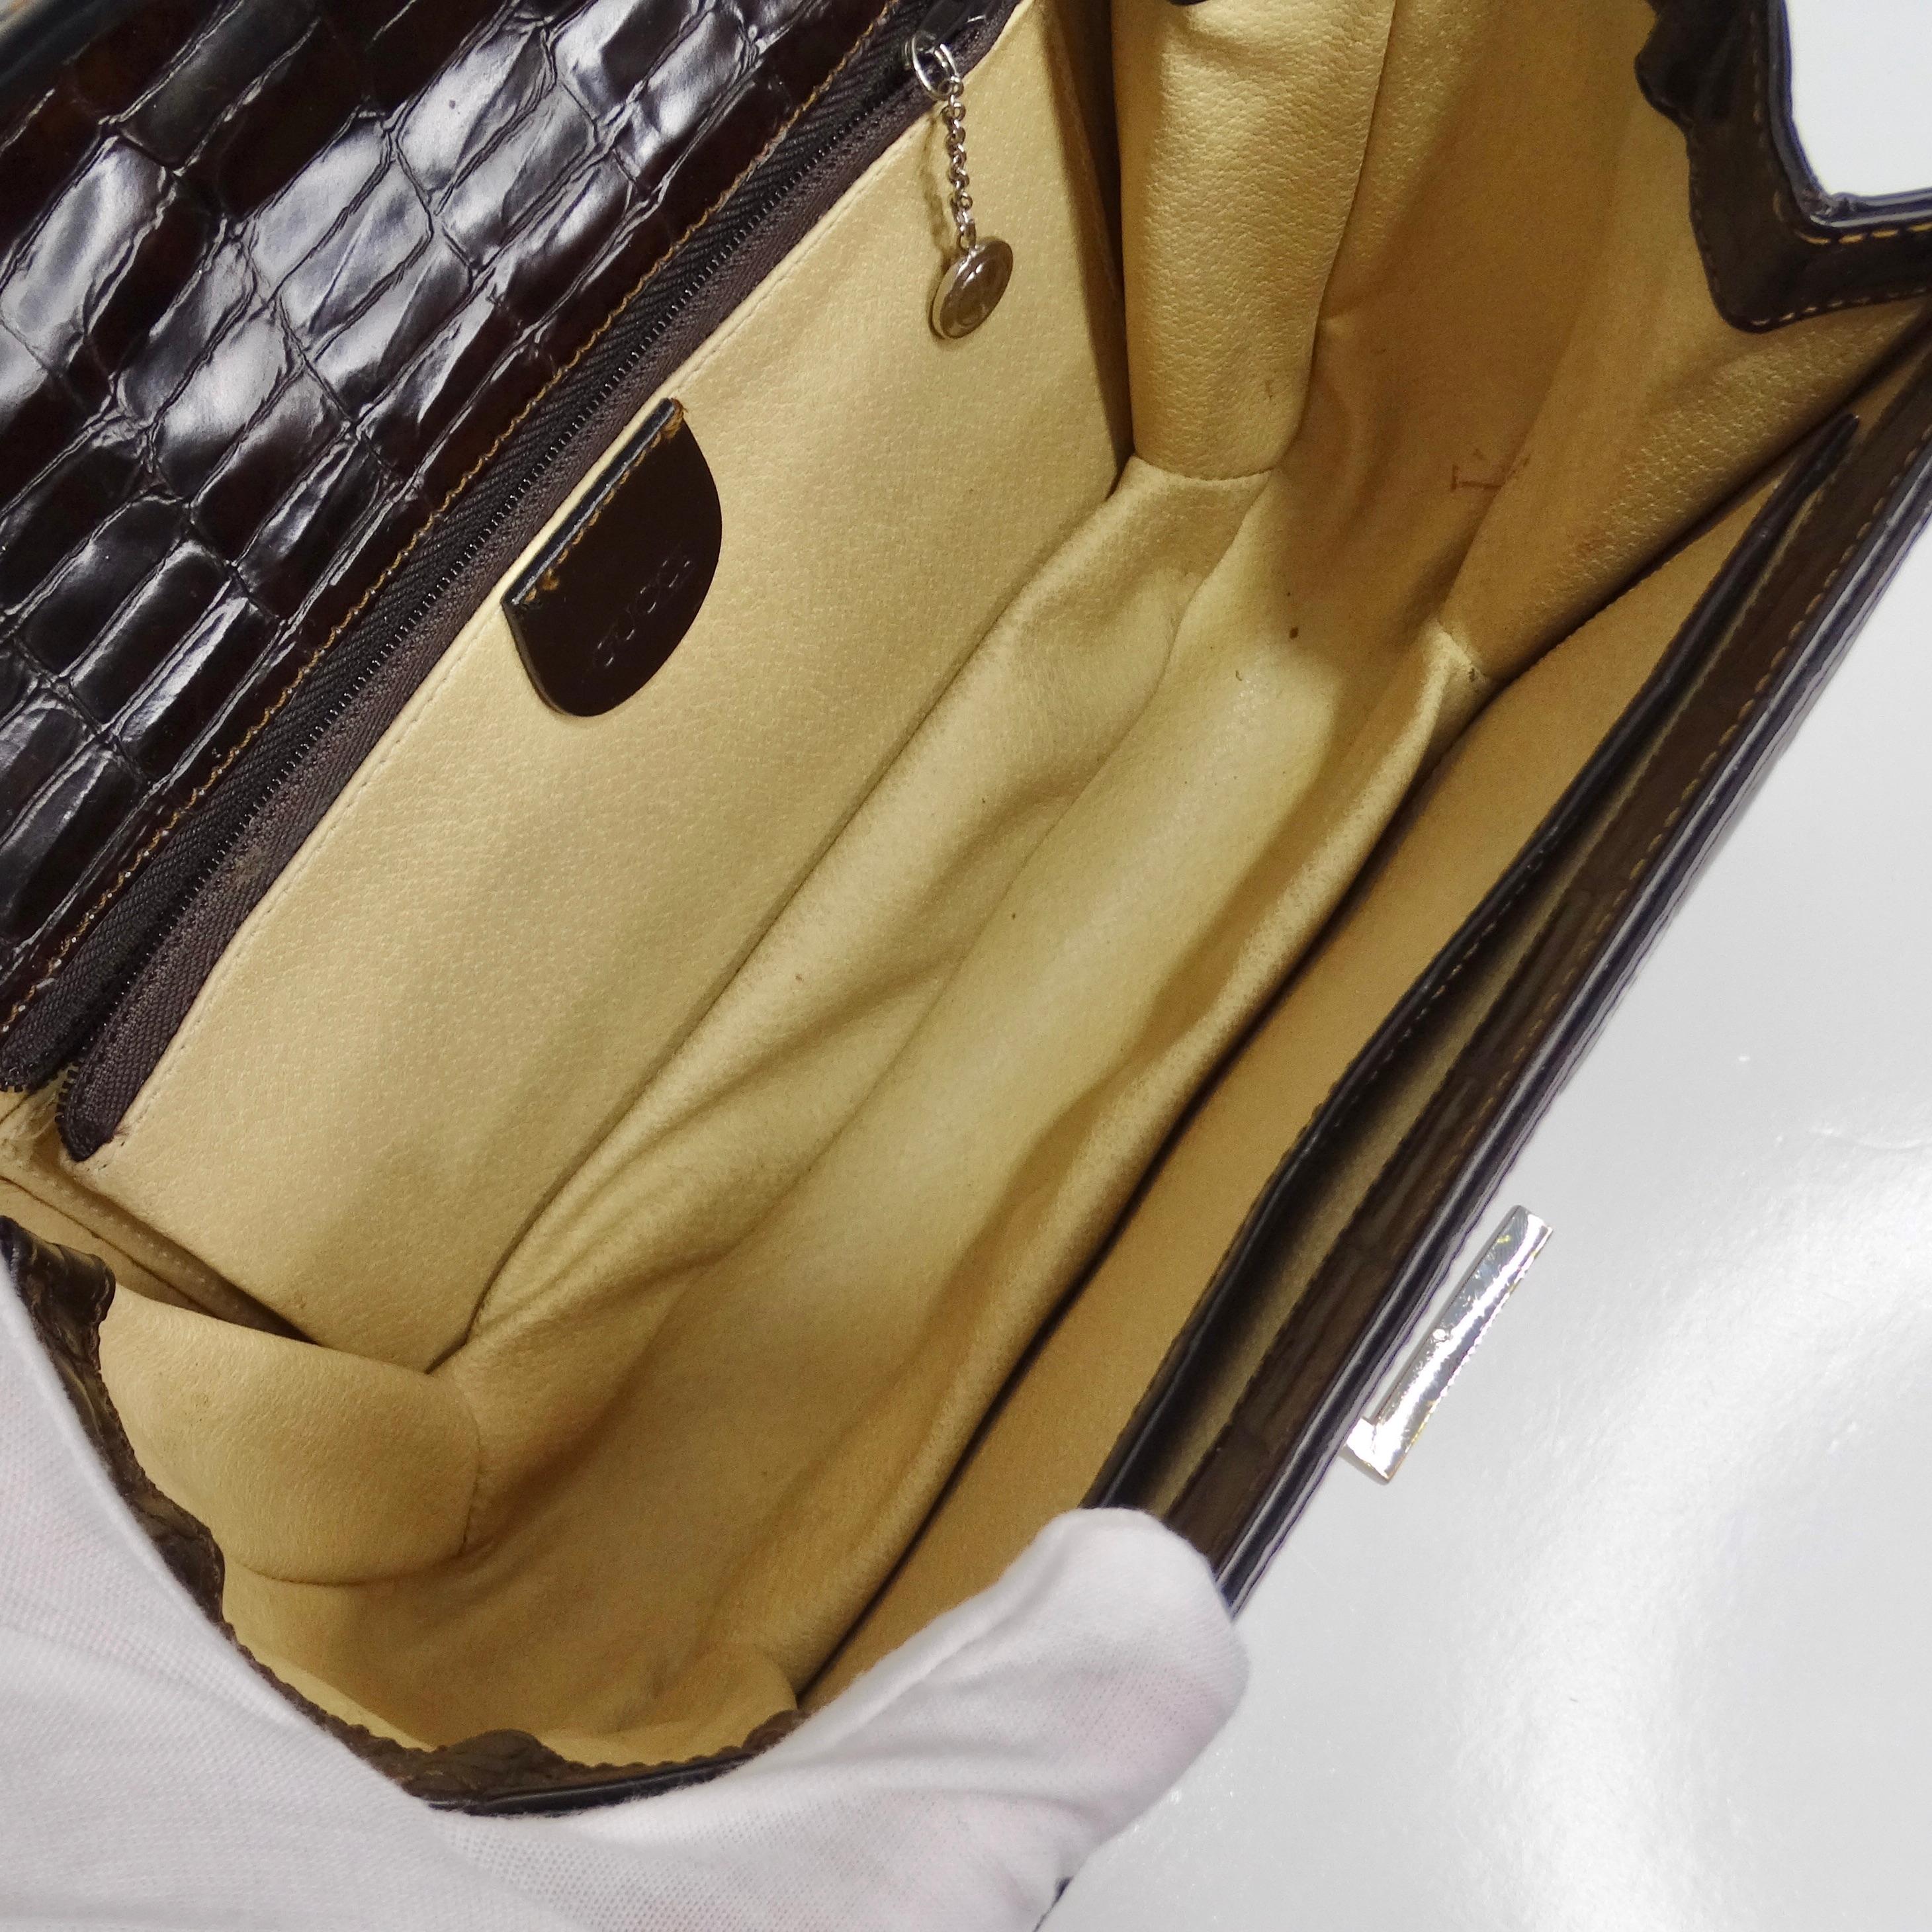 Gucci 1980s Alligator Embossed Leather Handbag For Sale 6